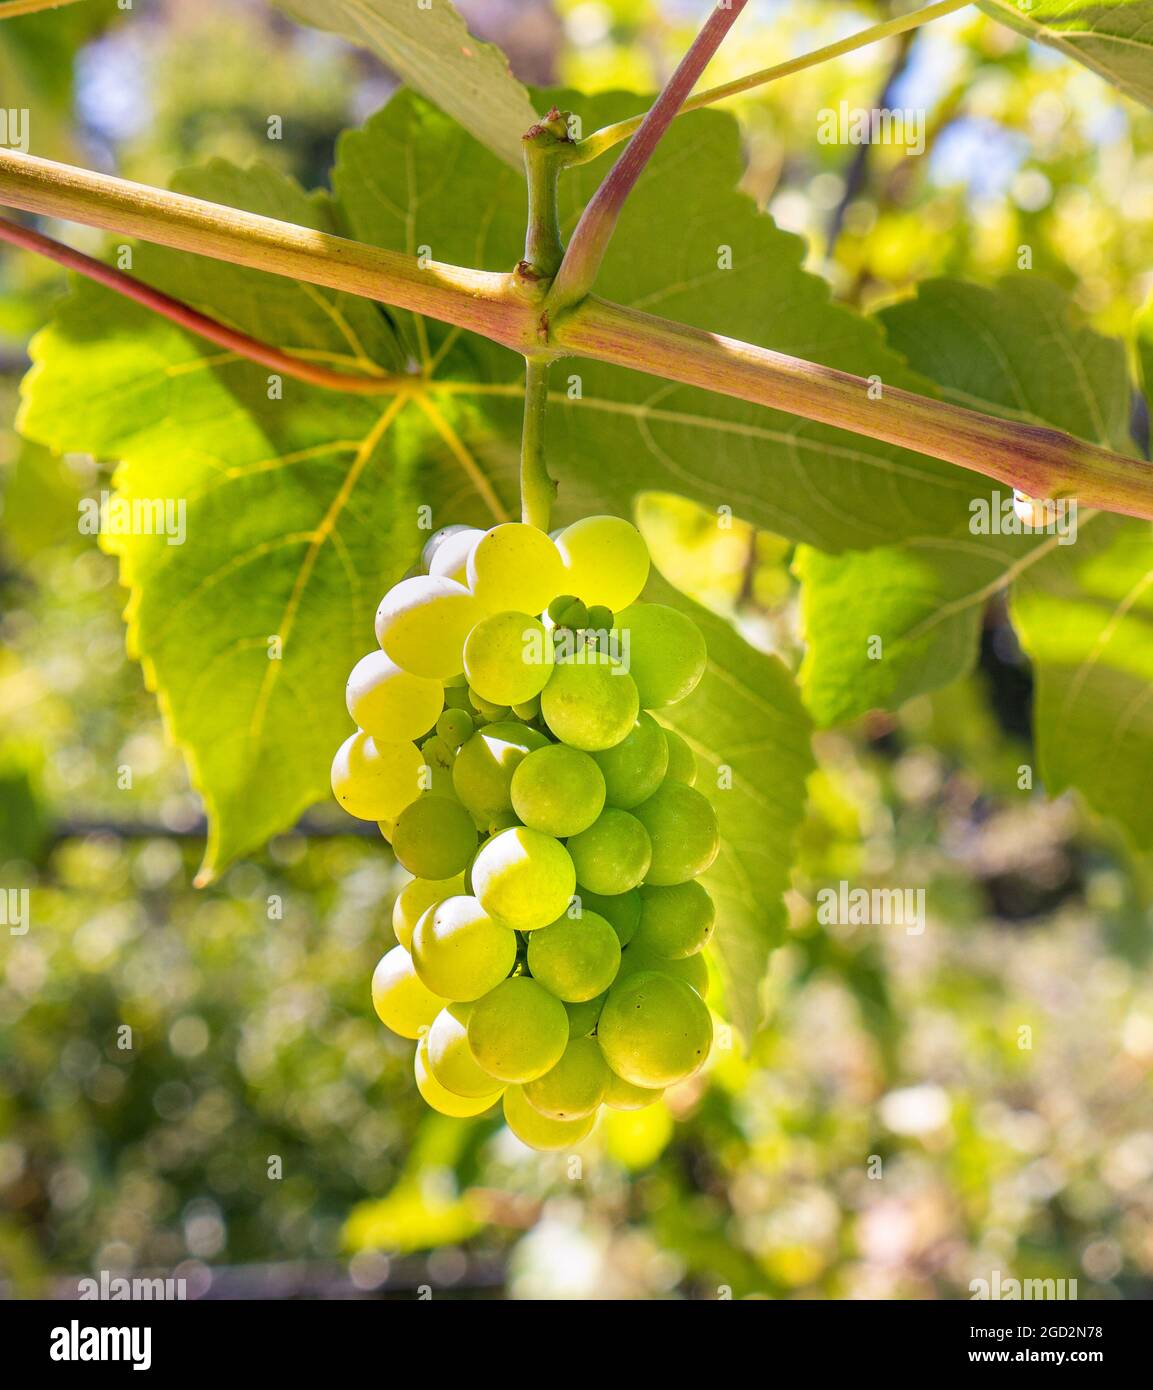 Interlaken Seedless Green Table Grape Vine buy online plants and